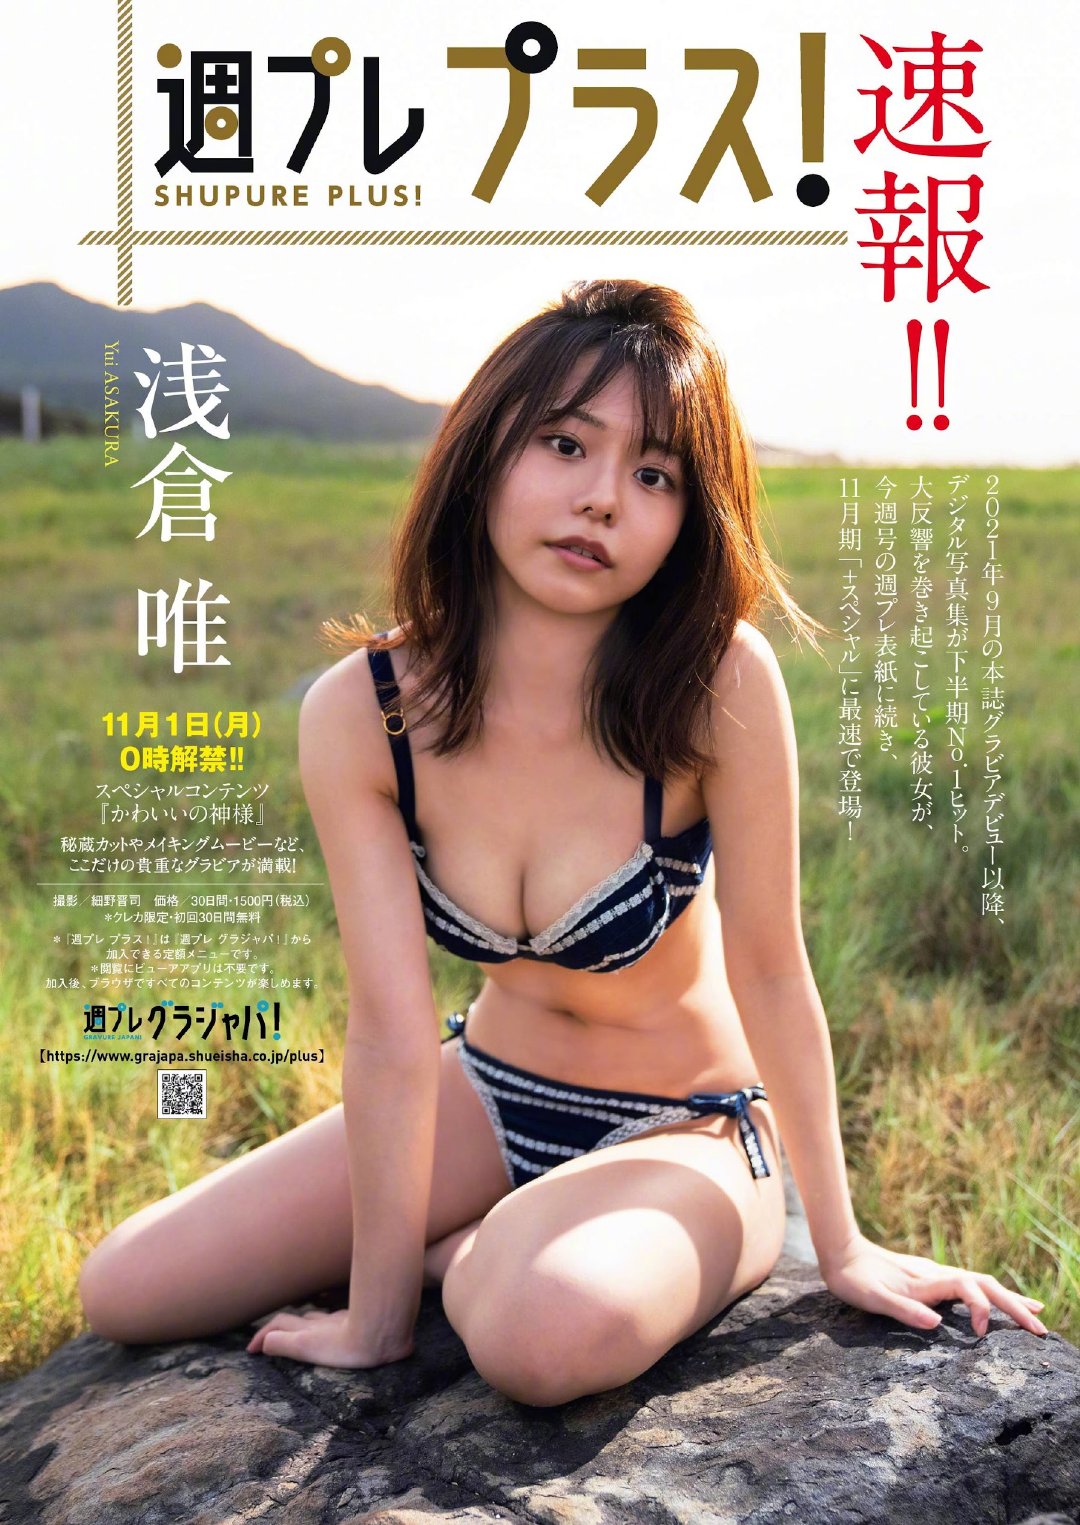 杂志[Weekly Playboy] 浅仓唯 首次登上封面插图5